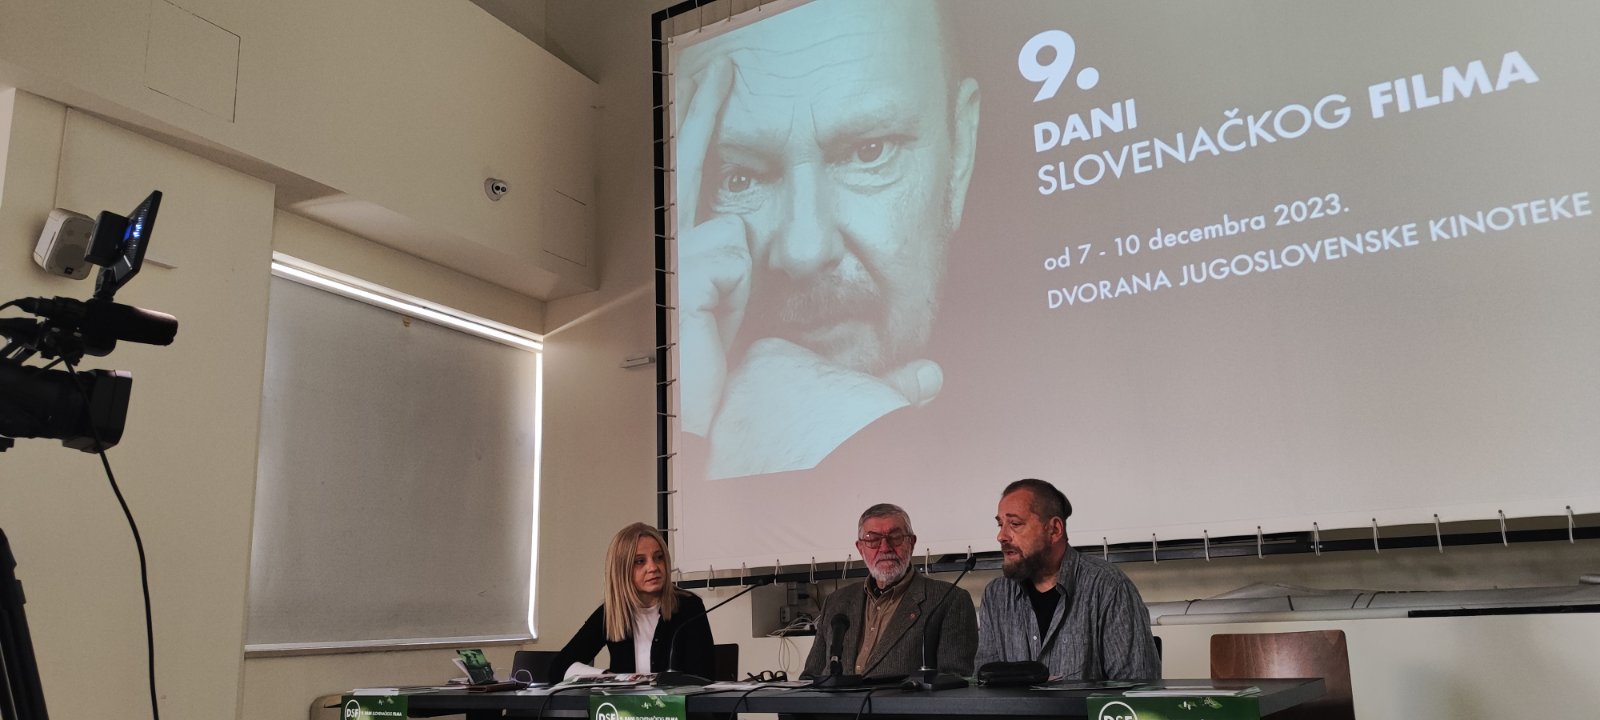 Nikola Kojo otvara 9. izdanje revije Dani slovenačkog filma: Uzbudljiv program u Jugoslovenskoj kinoteci od 7. do 10. decembra 2